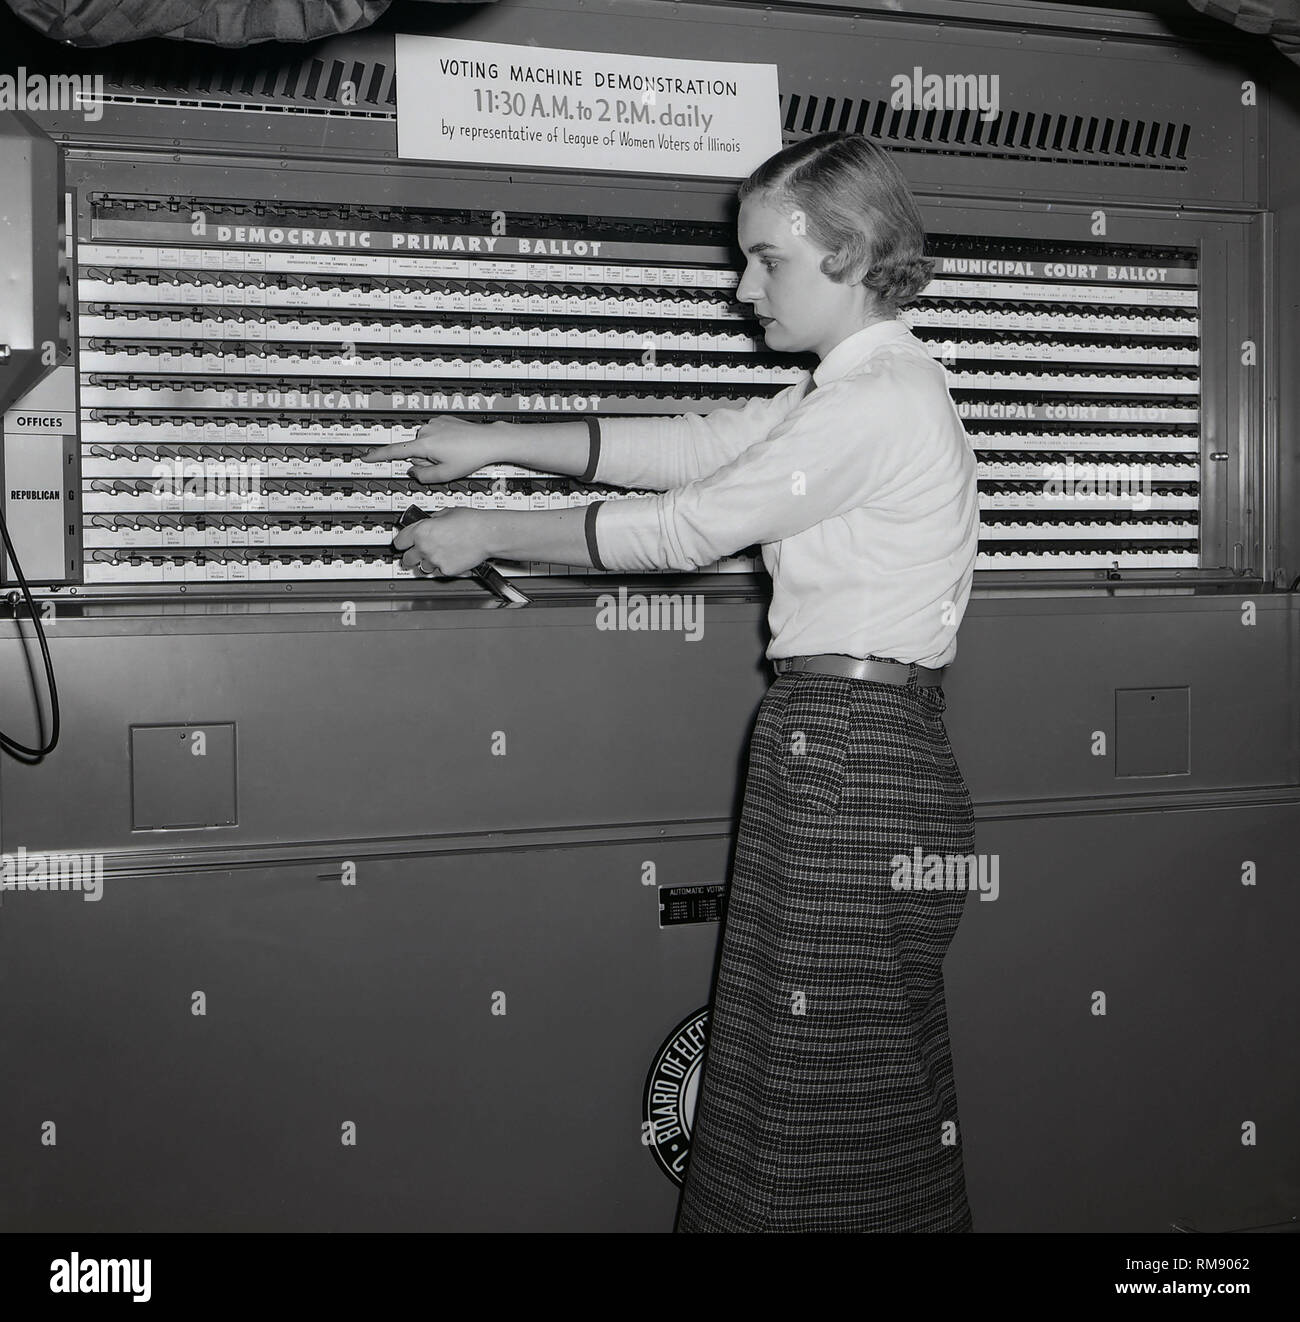 Ein Vertreter der Liga der weiblichen Wähler von Illinois zeigt ein abstimmungsgerät in Chicago, Ca. 1954. Stockfoto